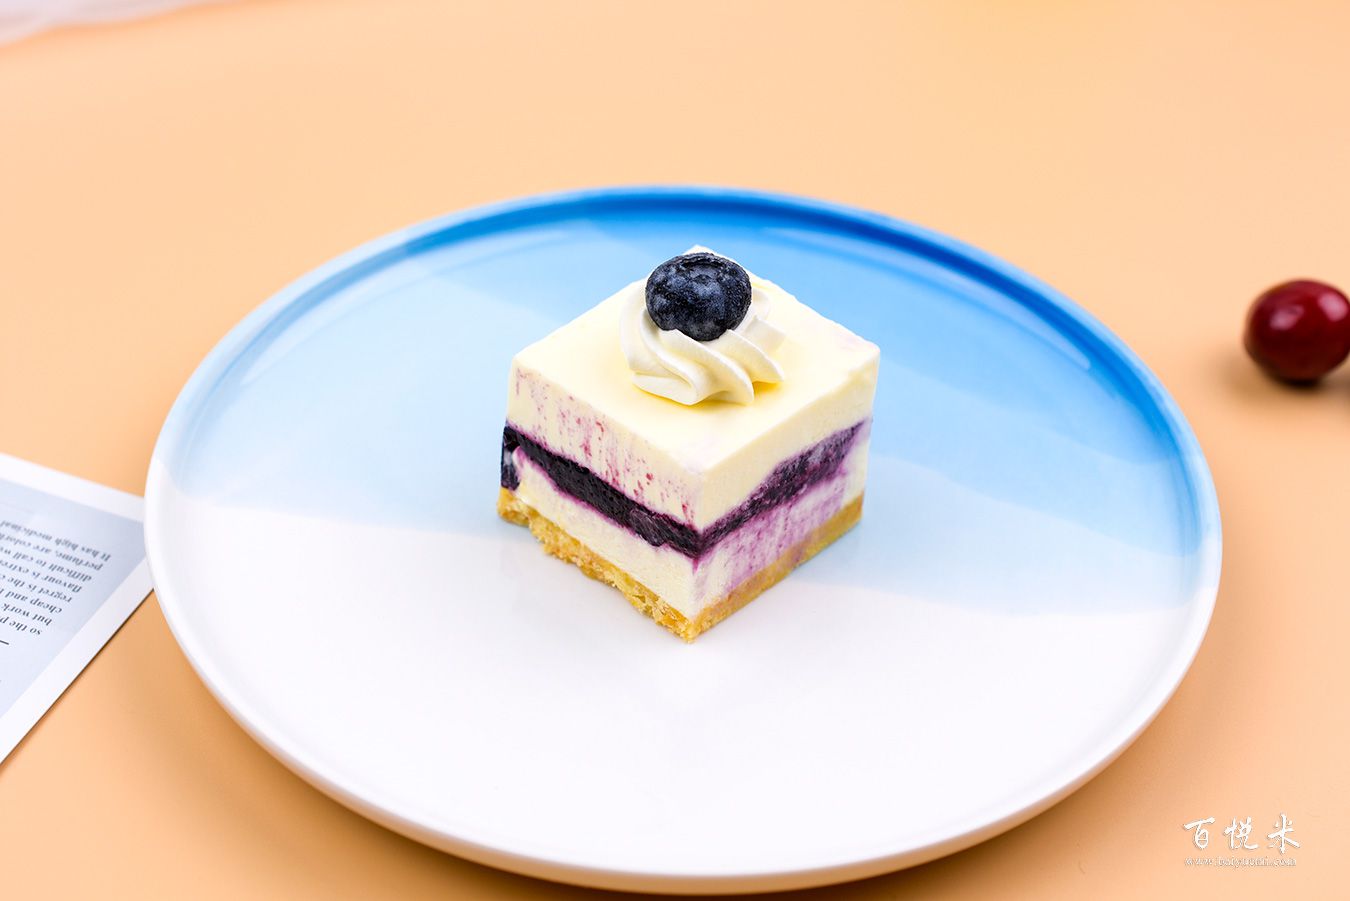 蓝莓芝士蛋糕 Blueberry Cheese Cake - Nanyang Kitchen 南洋小厨